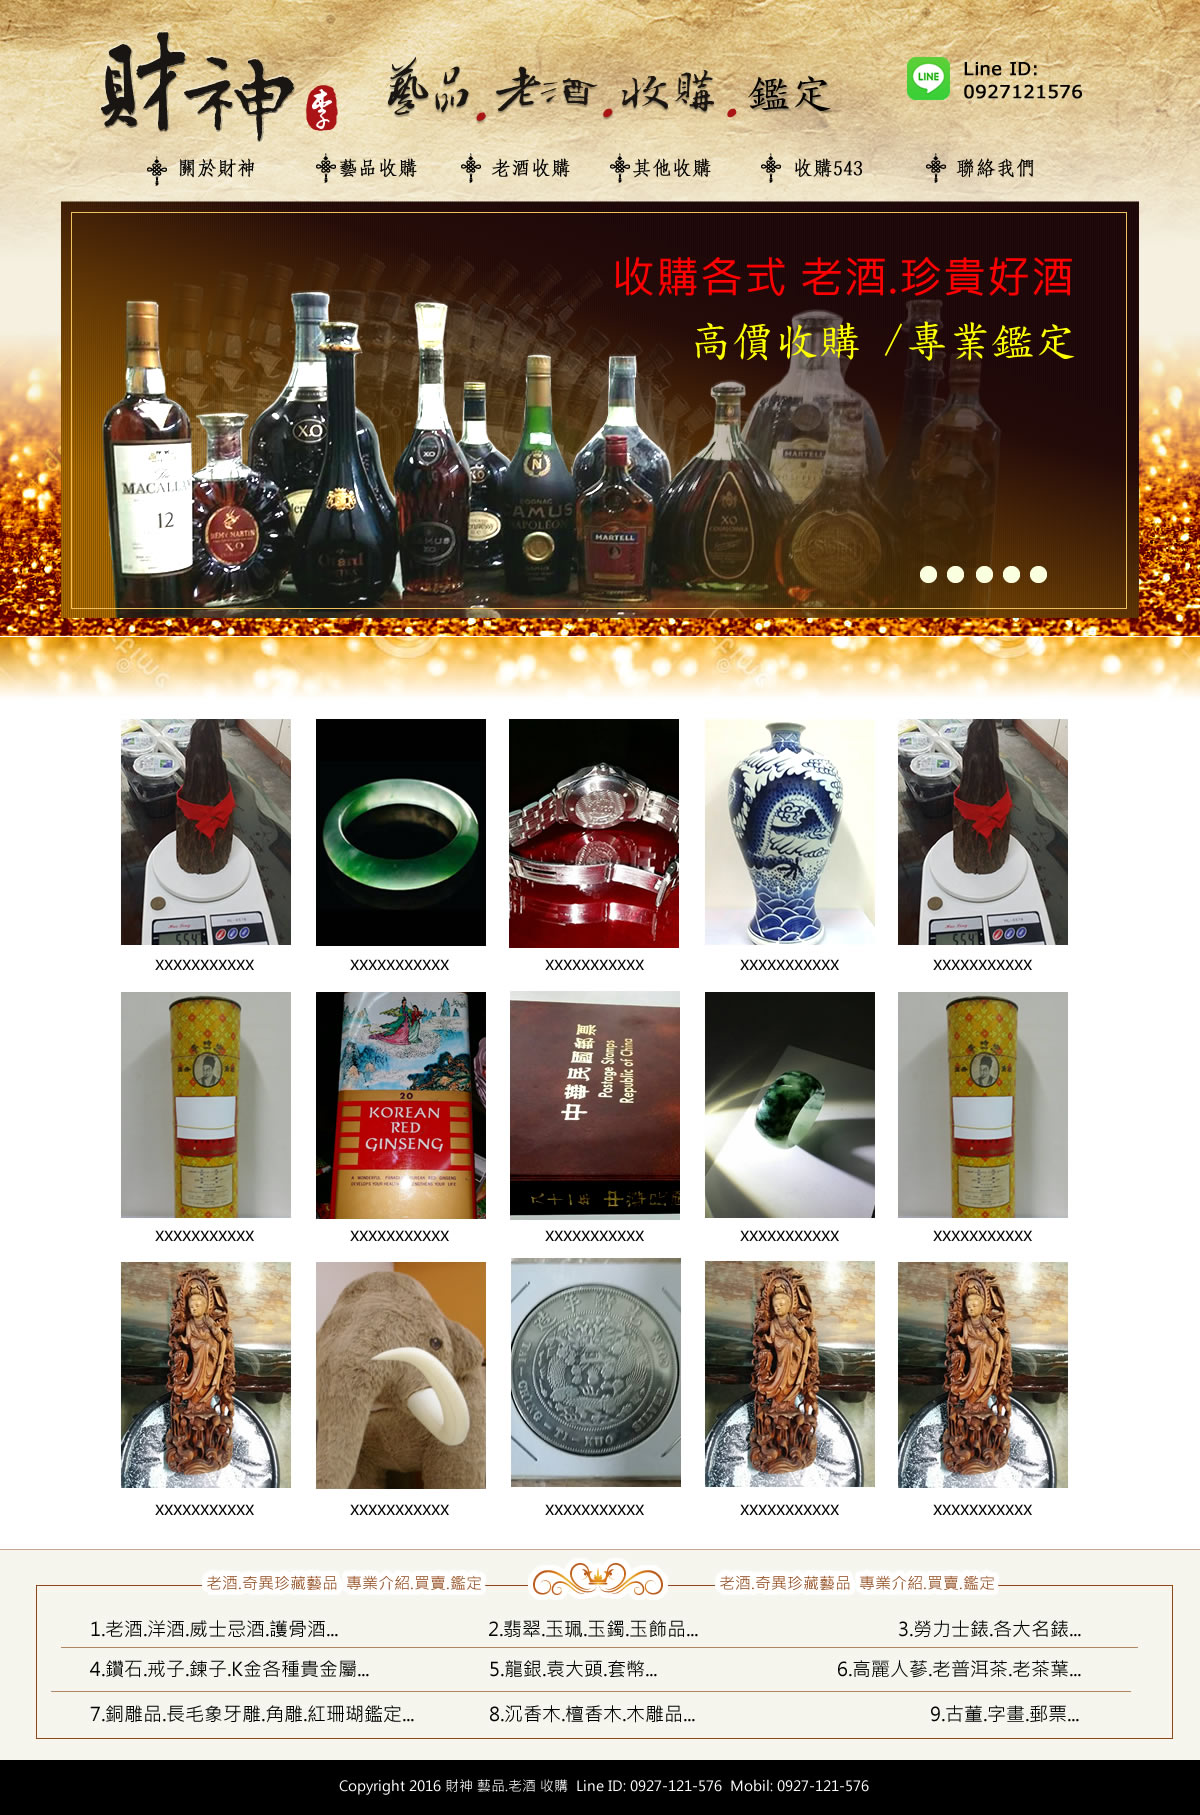 財神藝品老酒收購-橘子軟件網頁設計案例圖片